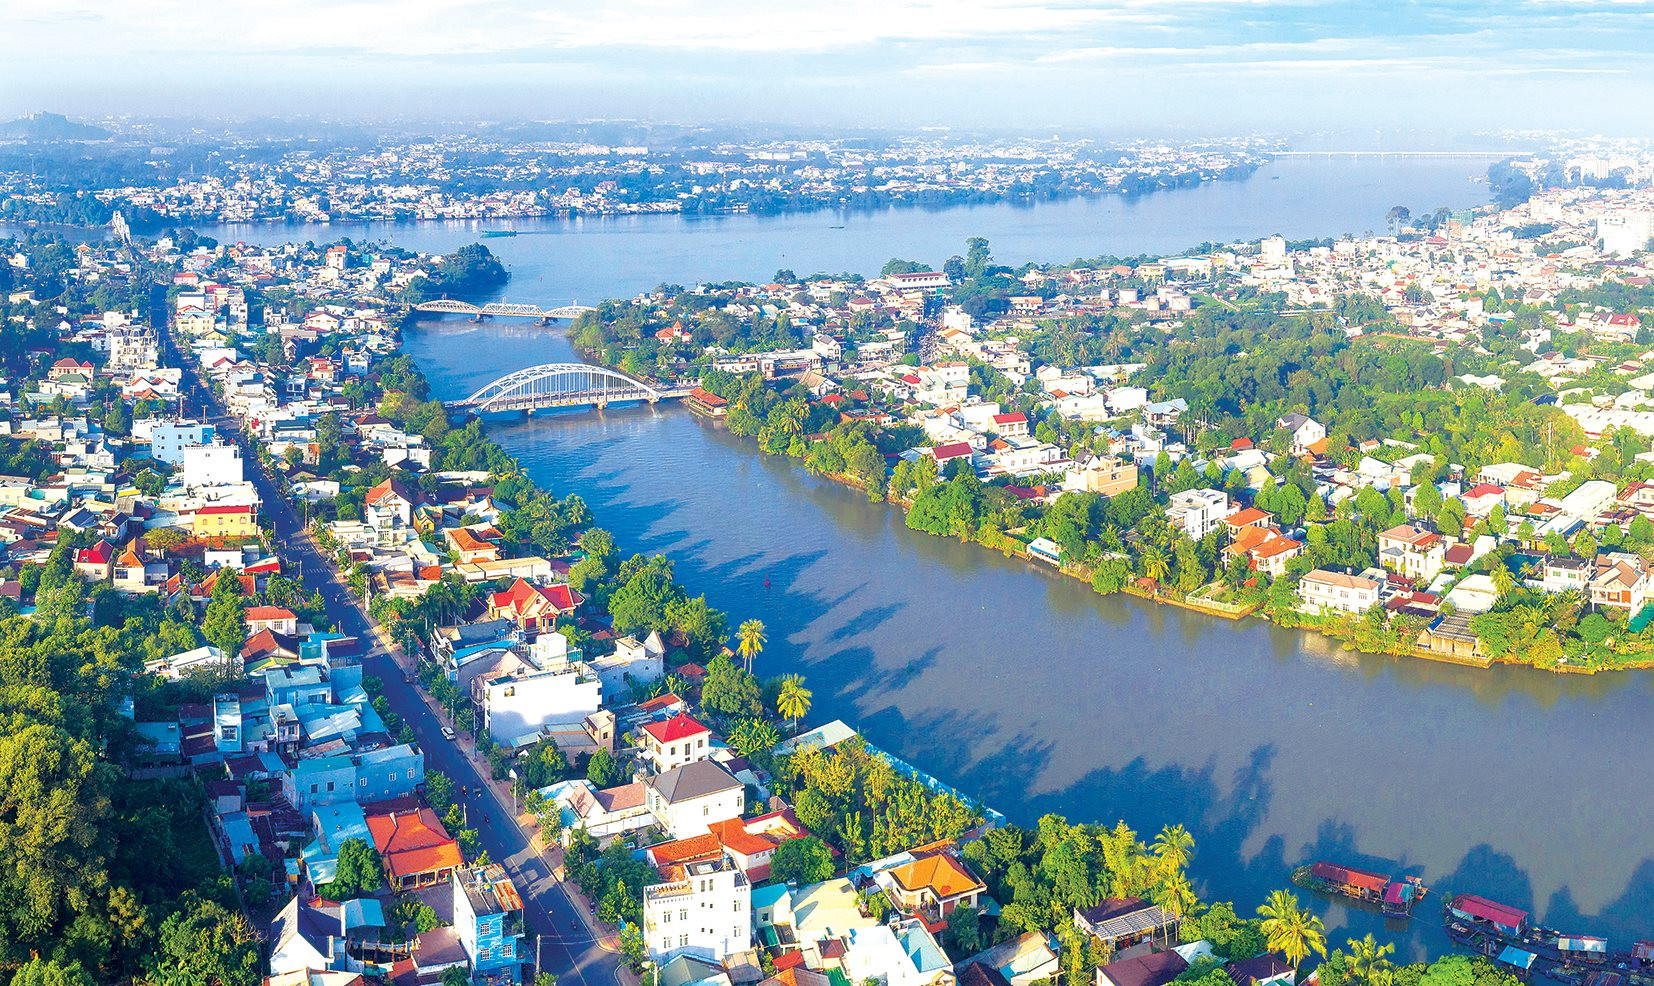 Tập đoàn Ecopark muốn làm Khu đô thị sinh thái Nhơn Trạch quy mô 3.800ha - Ảnh 1.